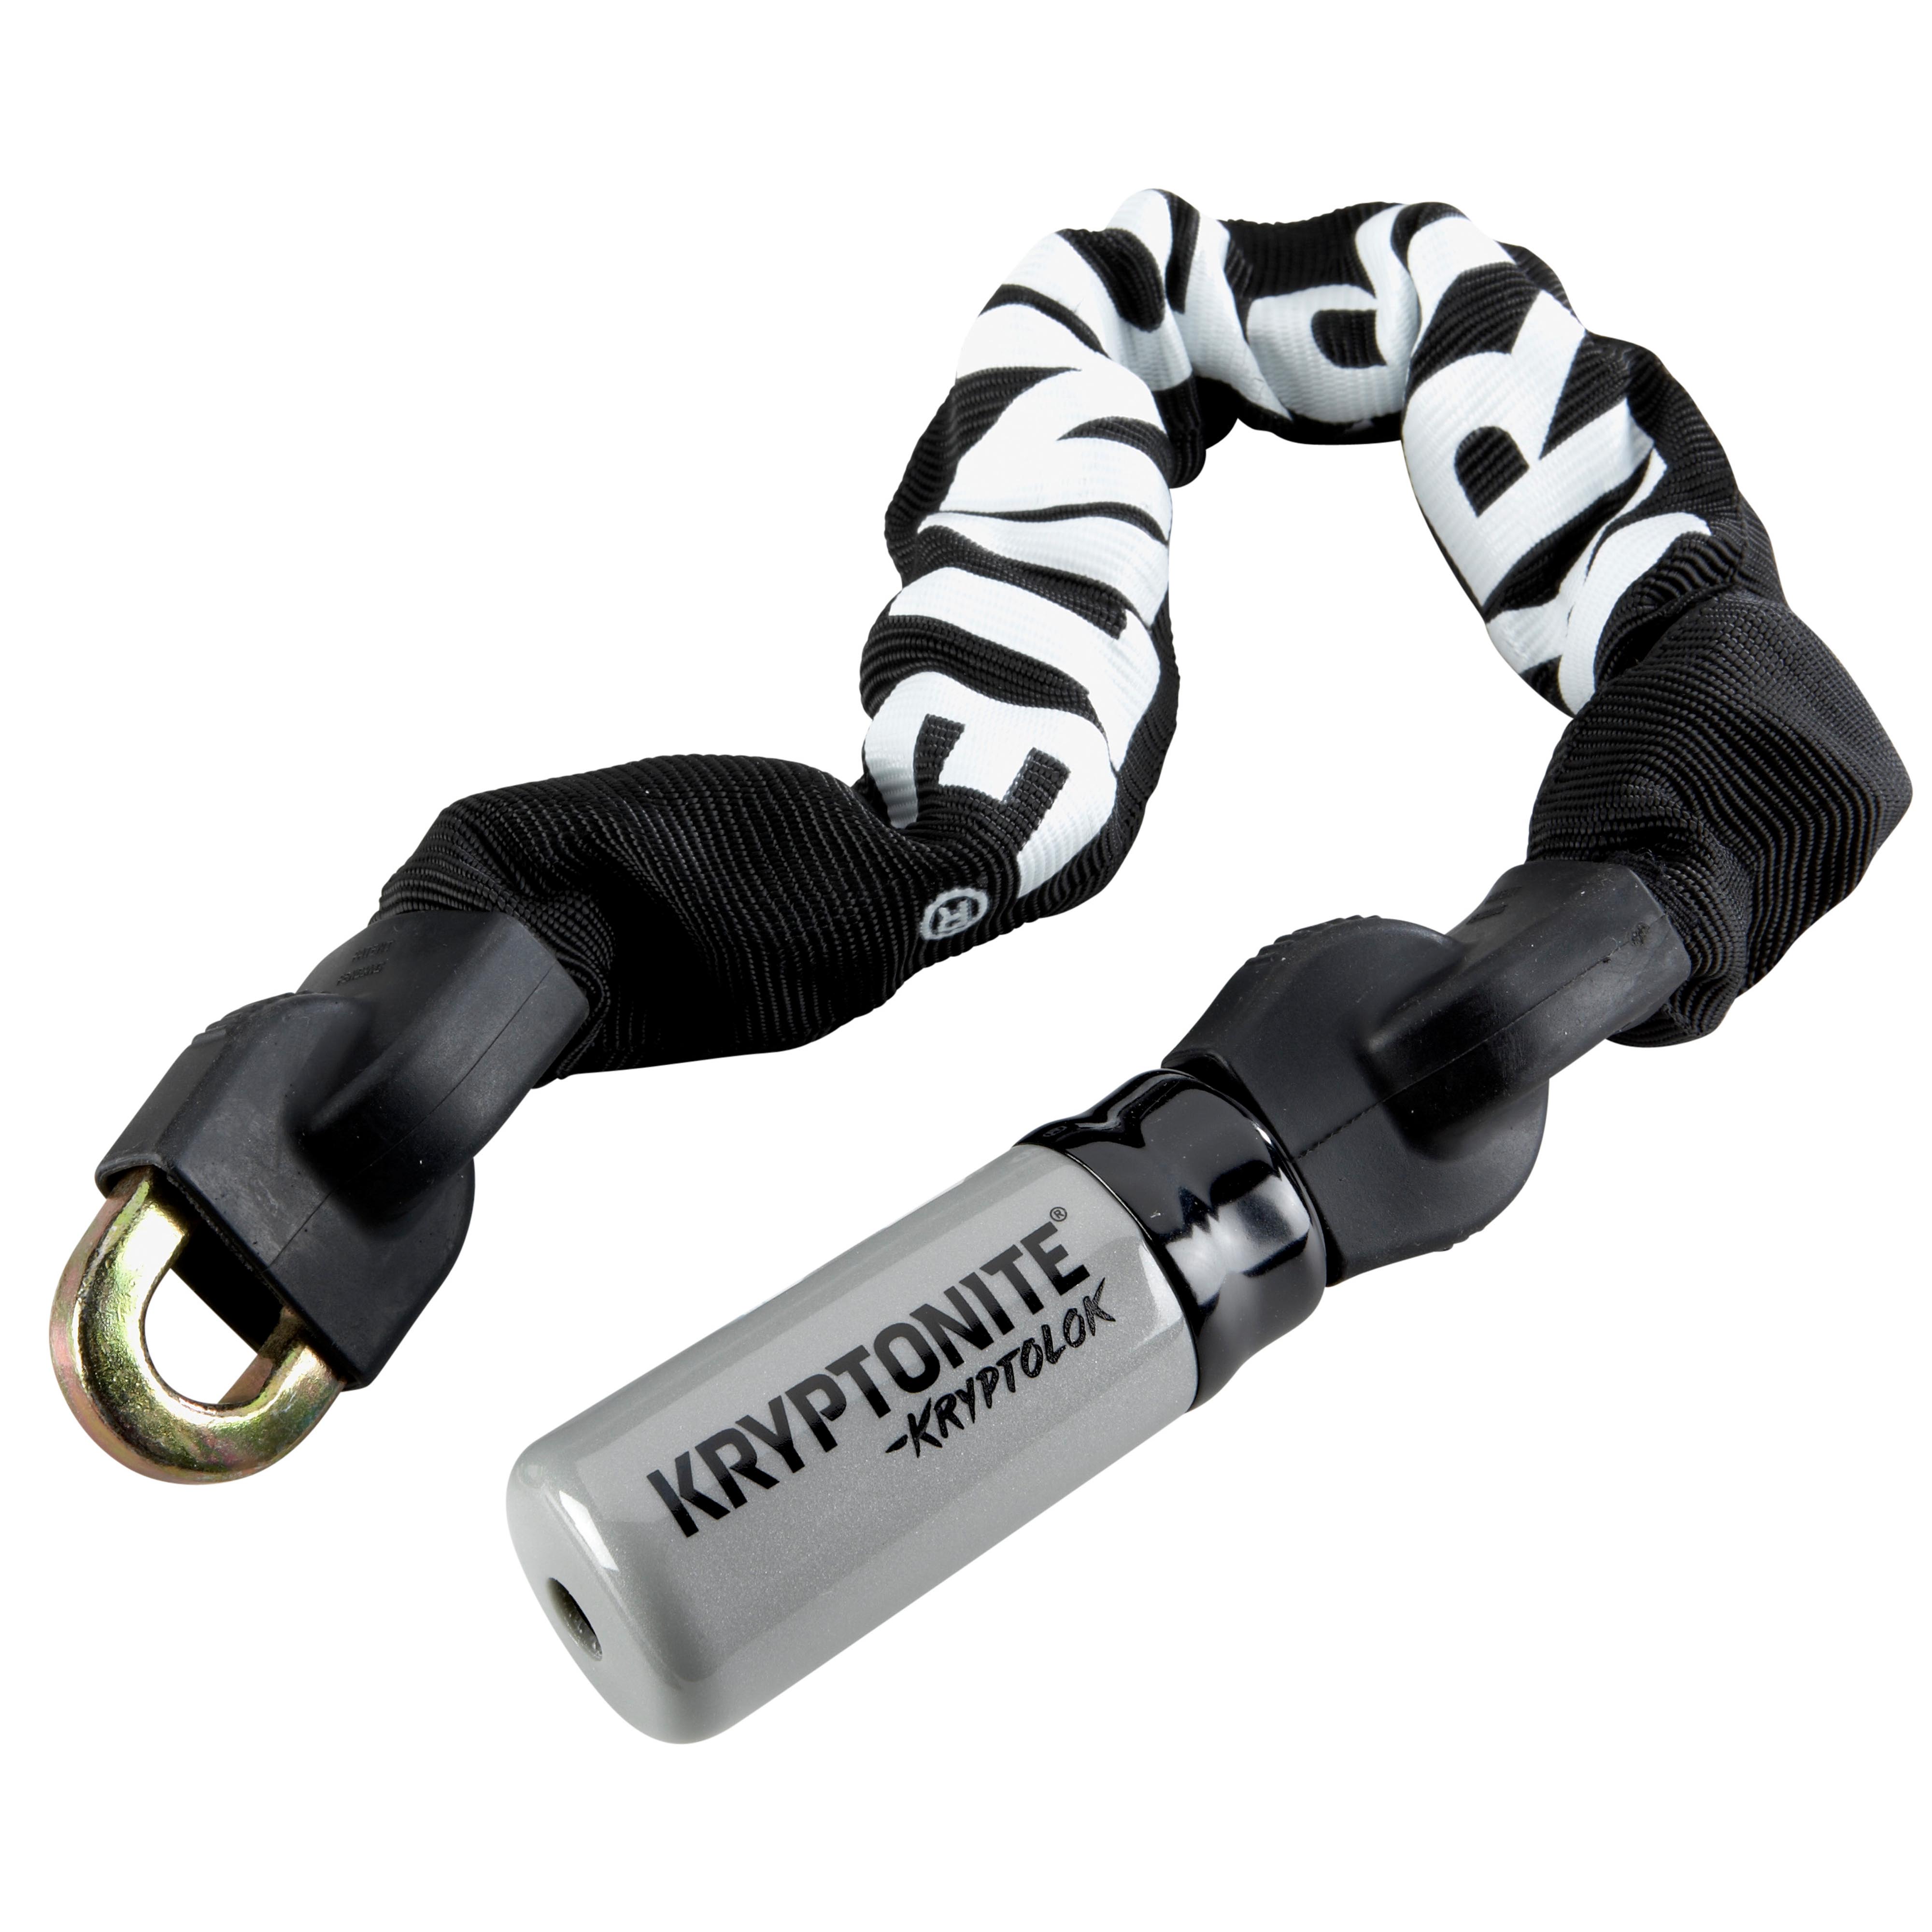 Kryptonite KryptoLok Series 2 Integrated Chain Bicycle Lock 